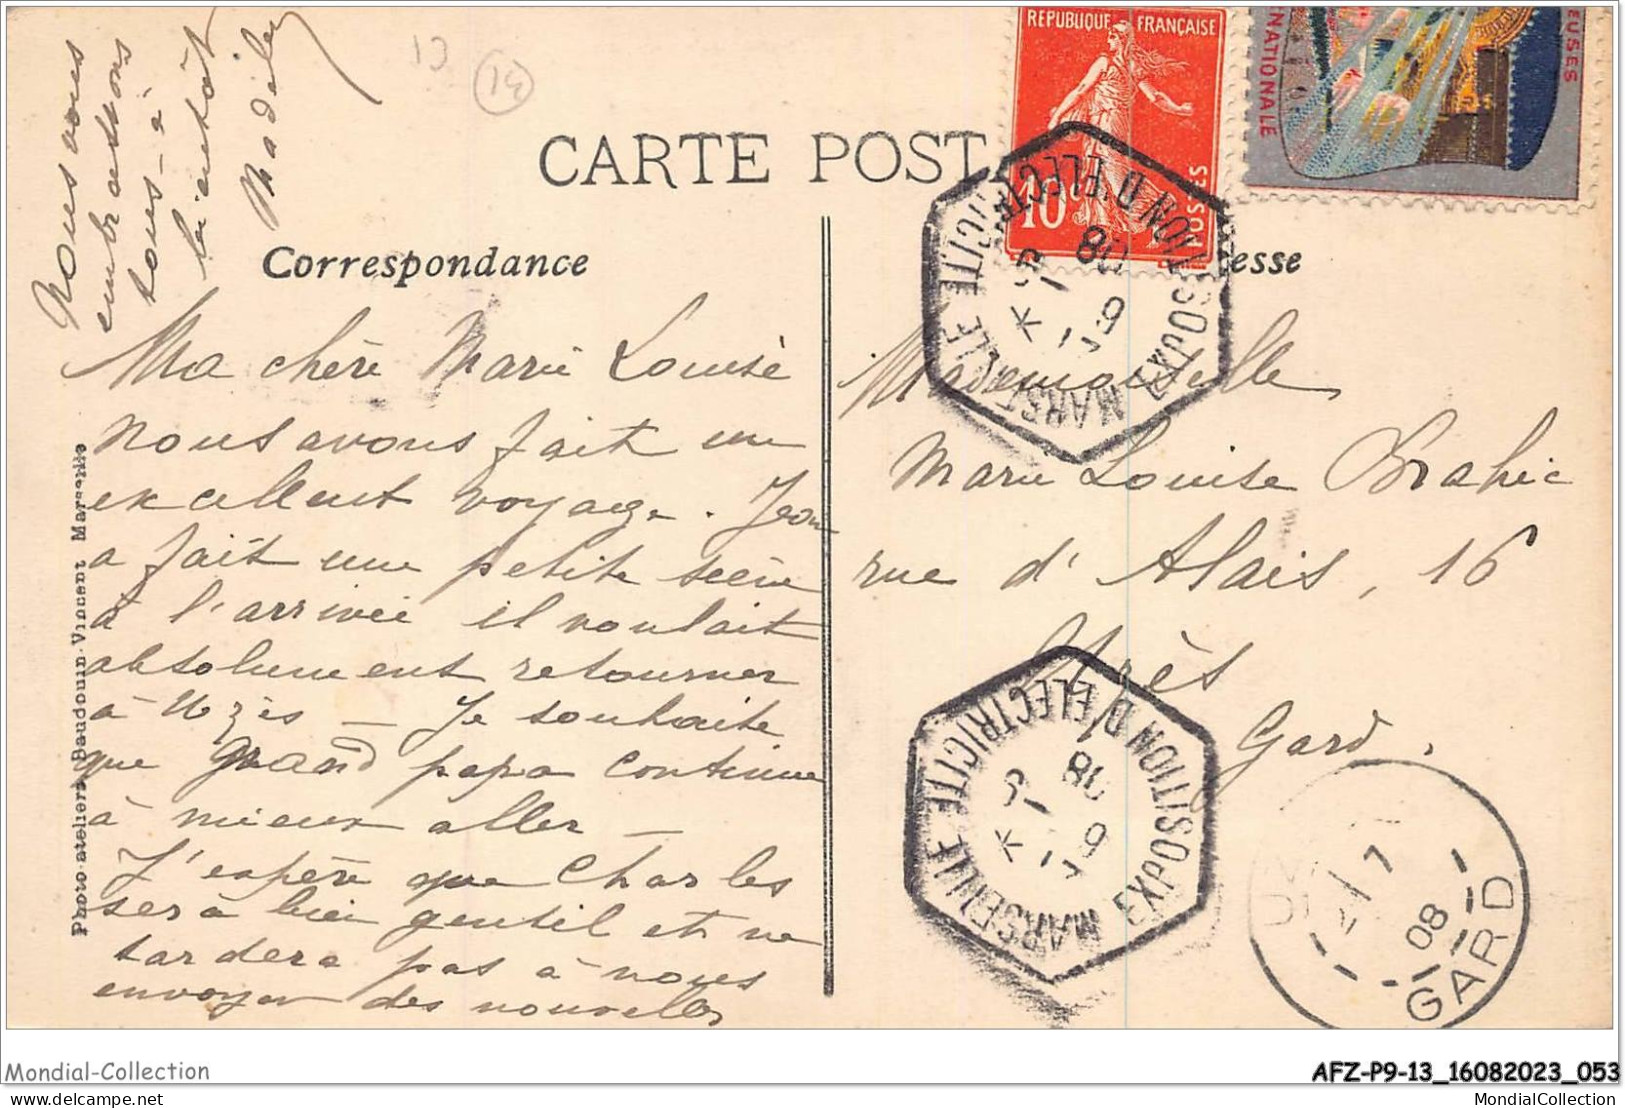 AFZP9-13-0709 - Exposition Internationale D'electricité - MARSEILLE - 1908 - Vue Générale - Côté Nord - Exposition D'Electricité Et Autres